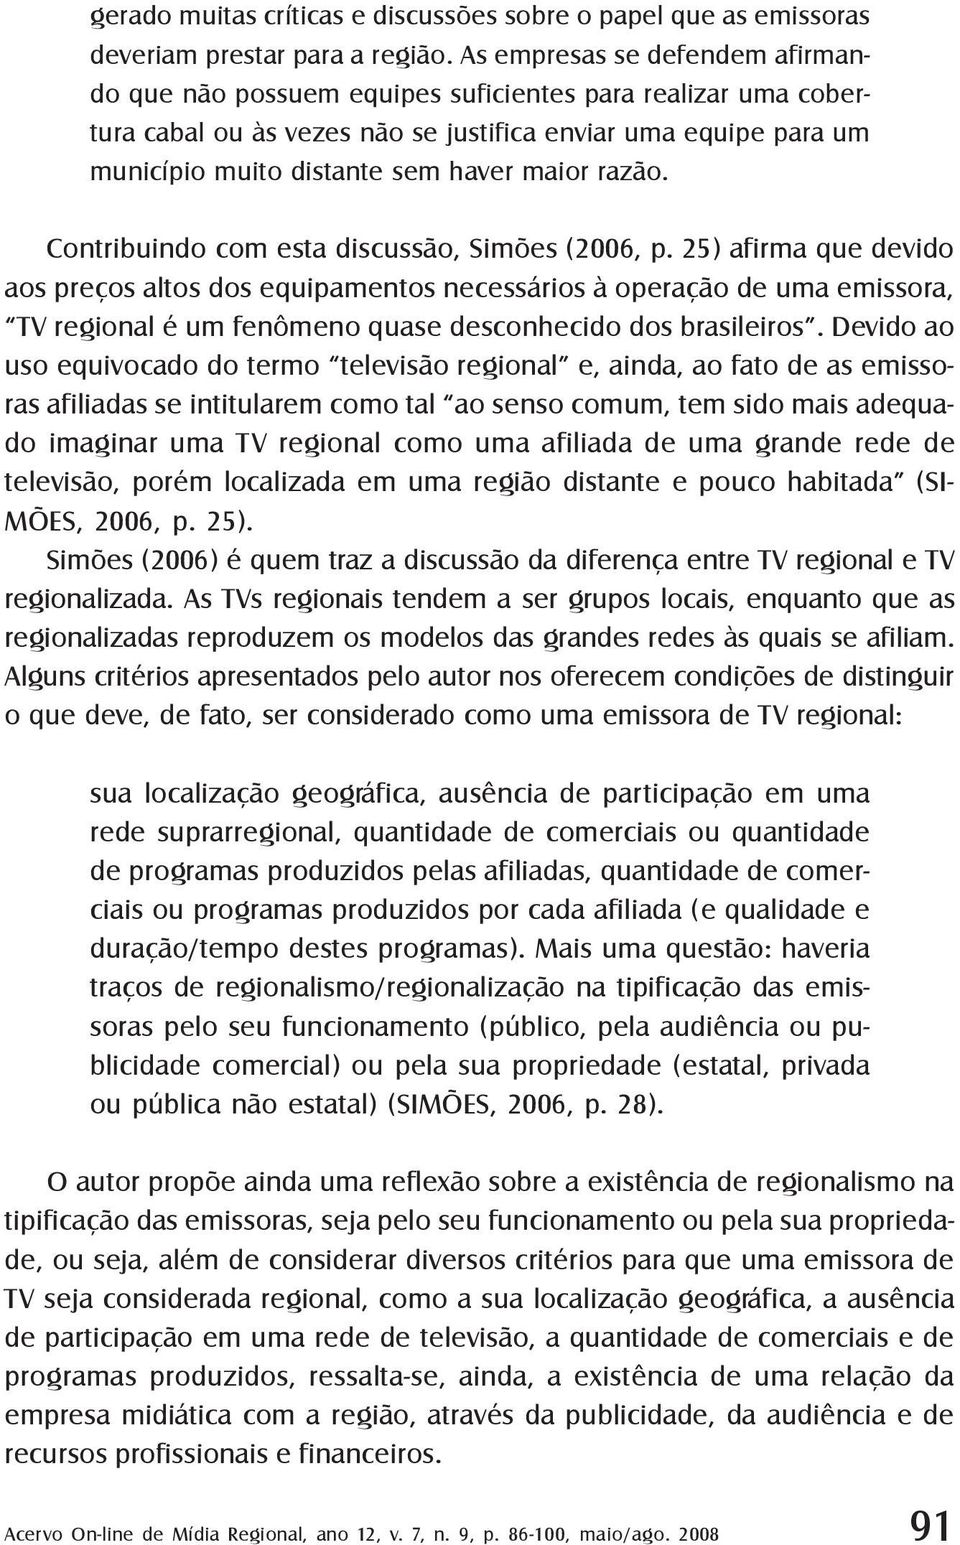 razão. Contribuindo com esta discussão, Simões (2006, p.